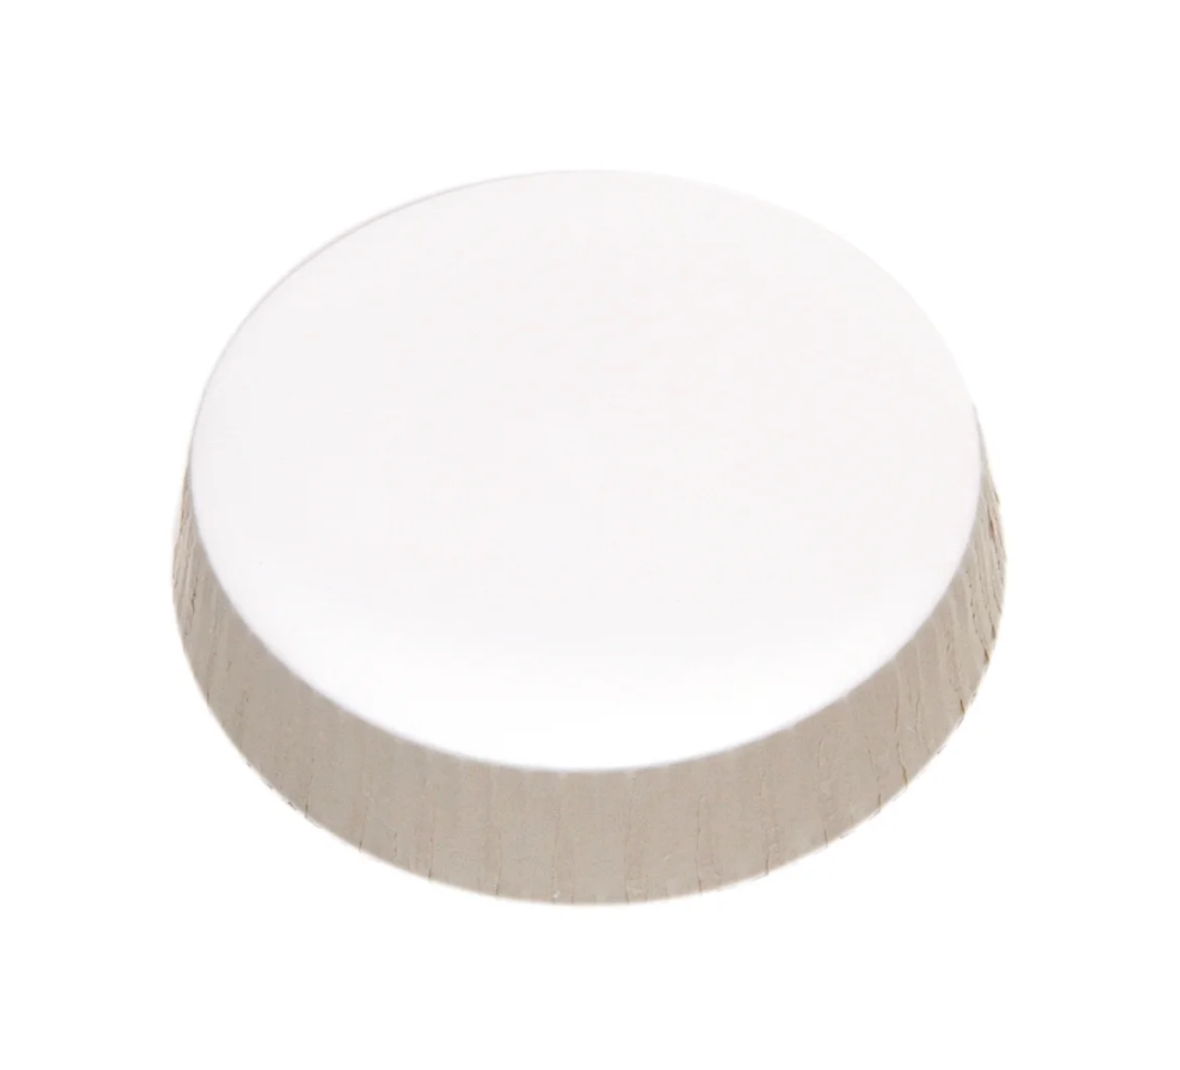 Sonoco Unprinted Stancaps Glass Cover, Paper, 75.5MM, 1000 Per Case